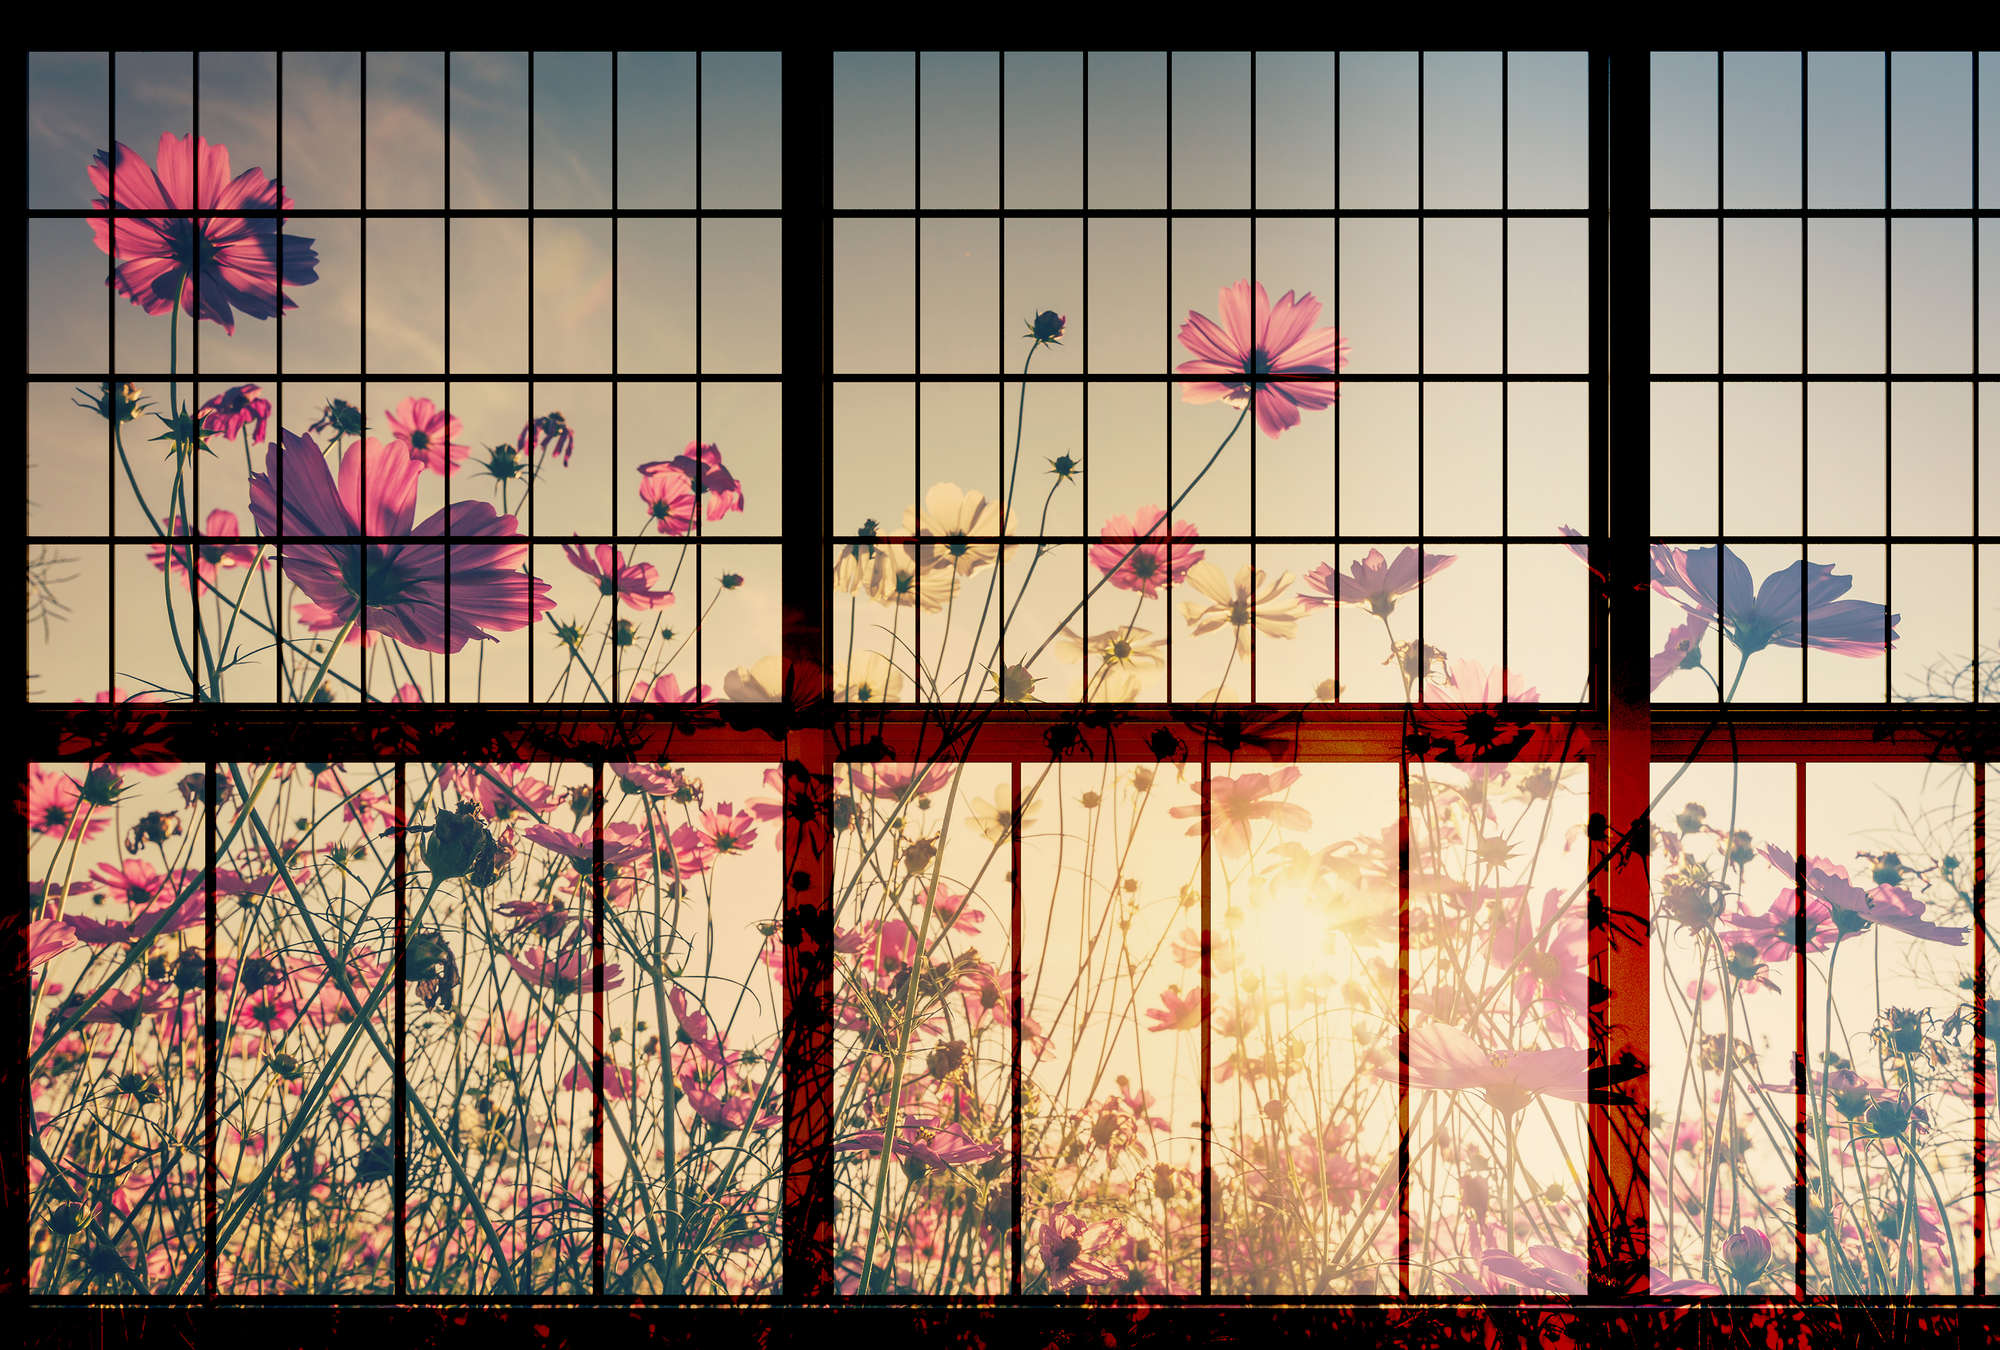             Meadow 1 - Papier peint fenêtre à croisillons avec prairie fleurie - vert, rose | Intissé lisse mat
        